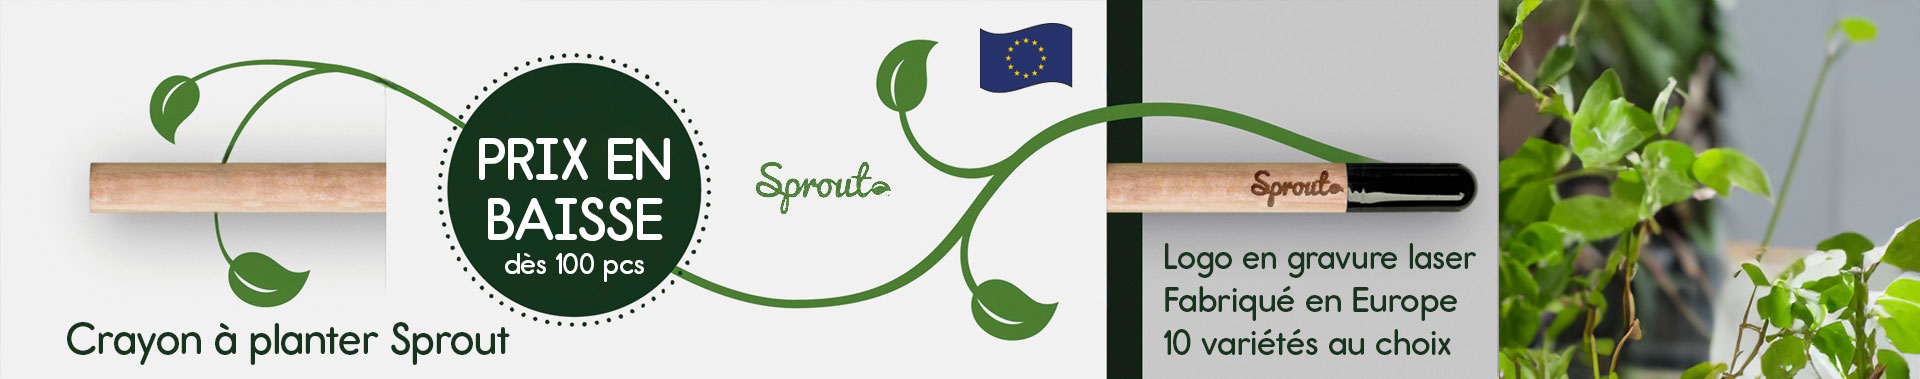 Crayon personnalisable à planter Sprout, prix en baisse